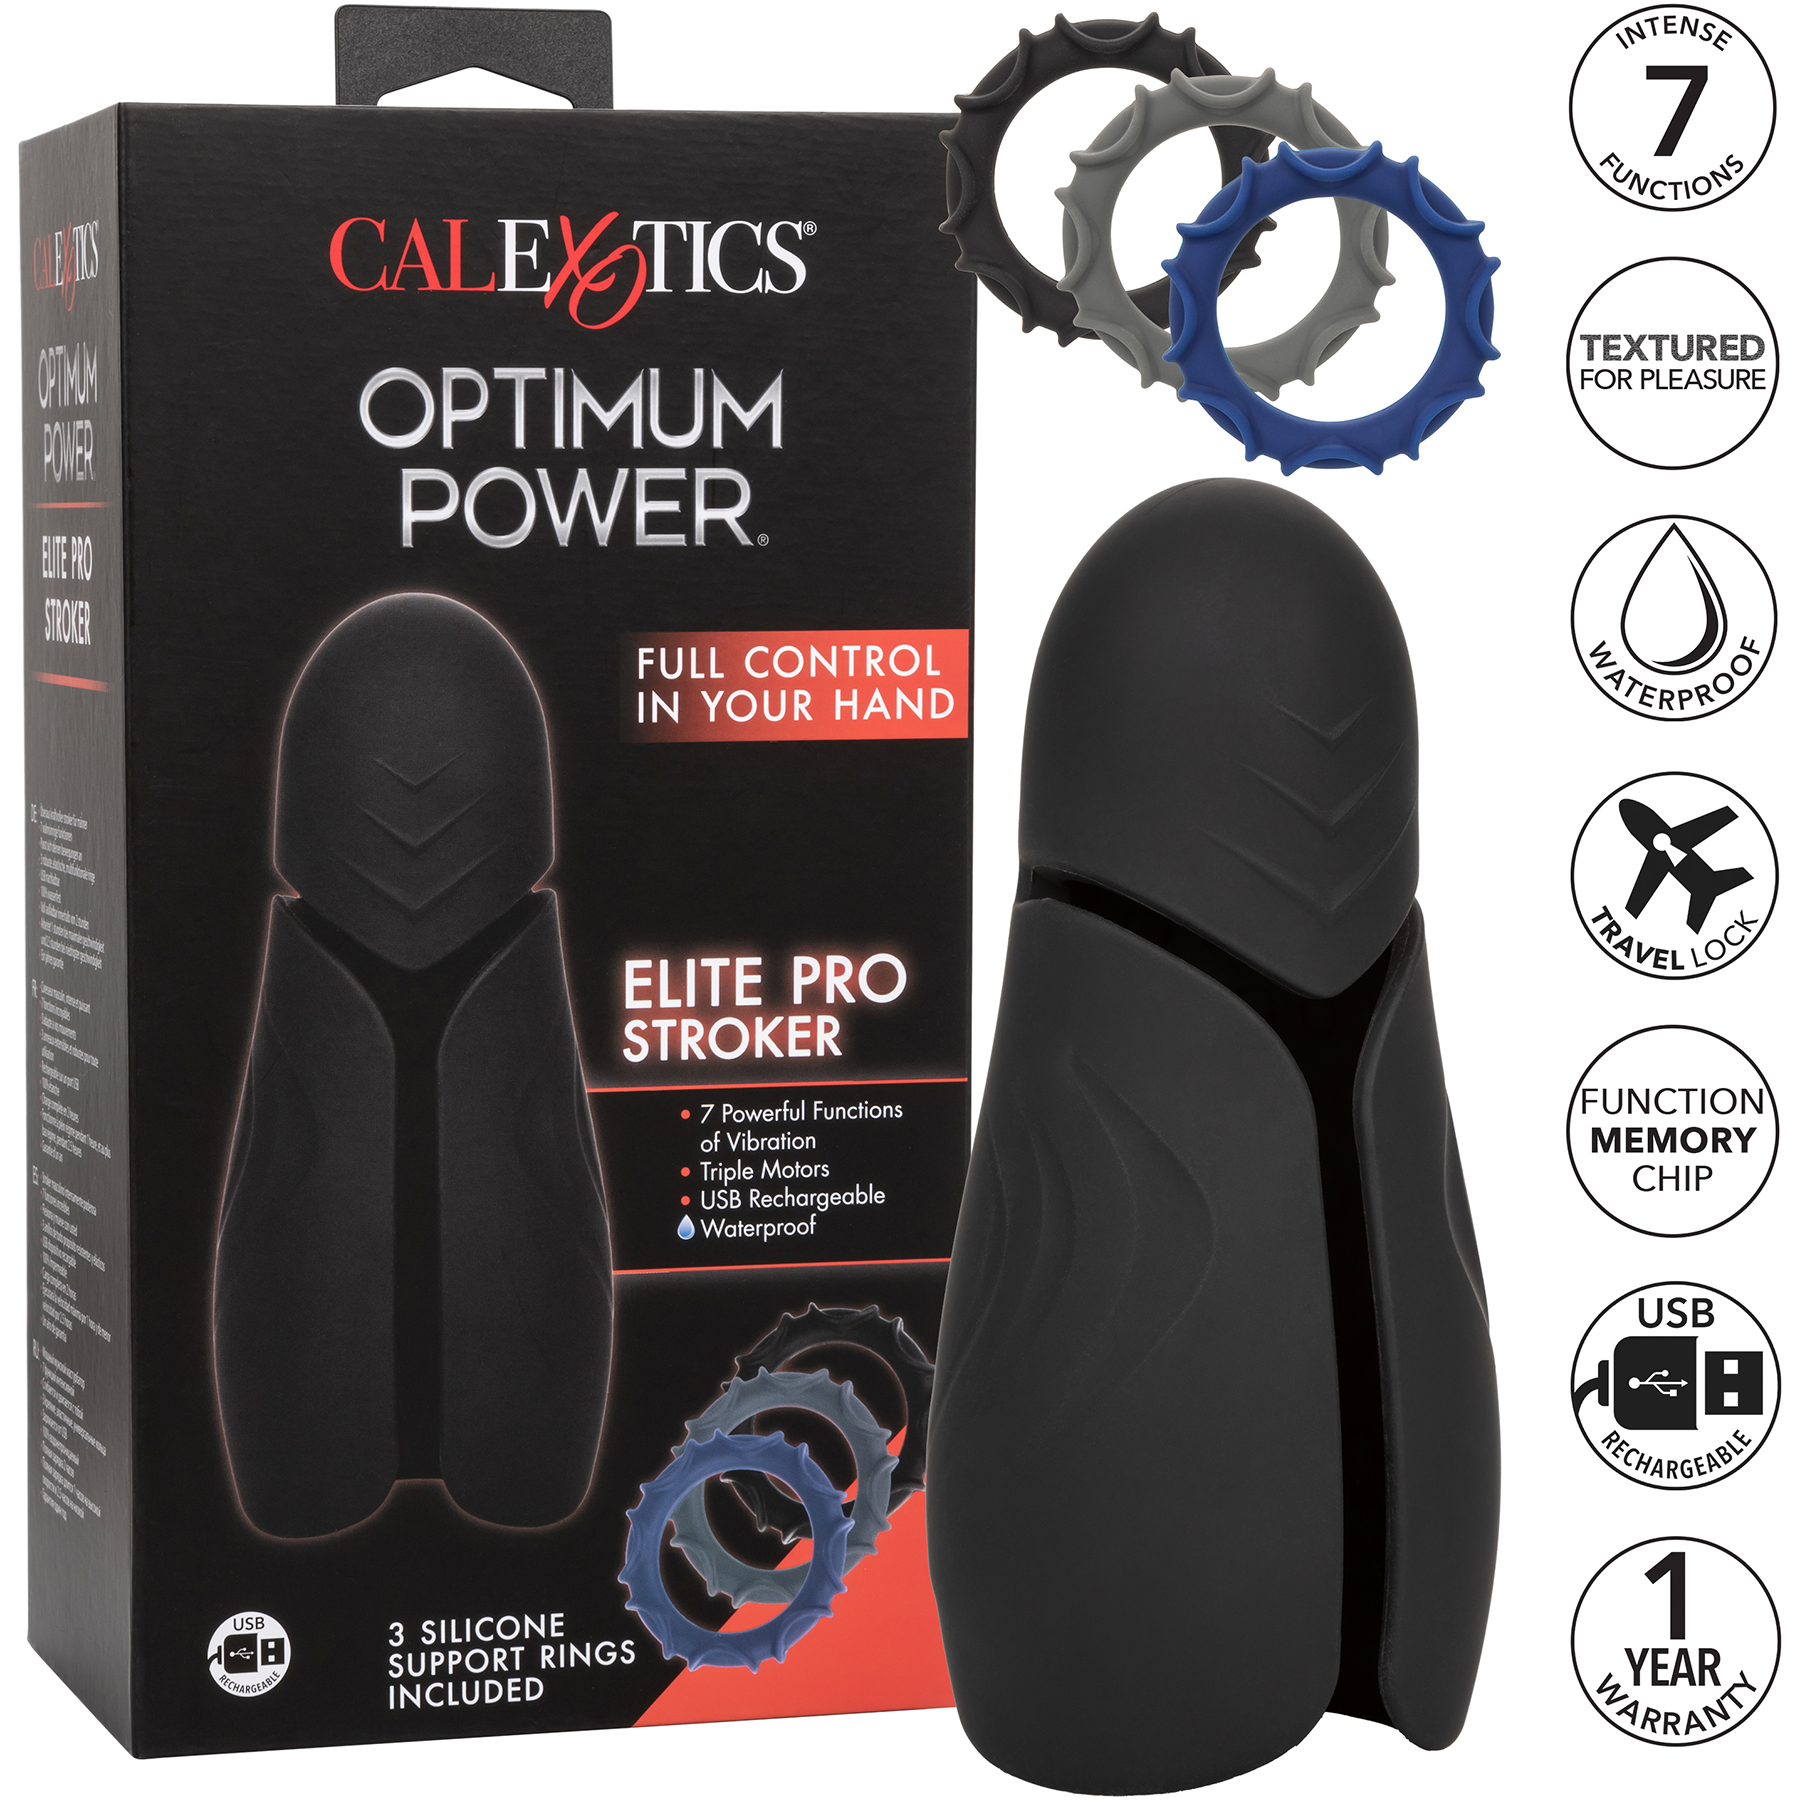 Optimum Power Pro Stroker Silicone Rechargeable Penis Masturbator - Features